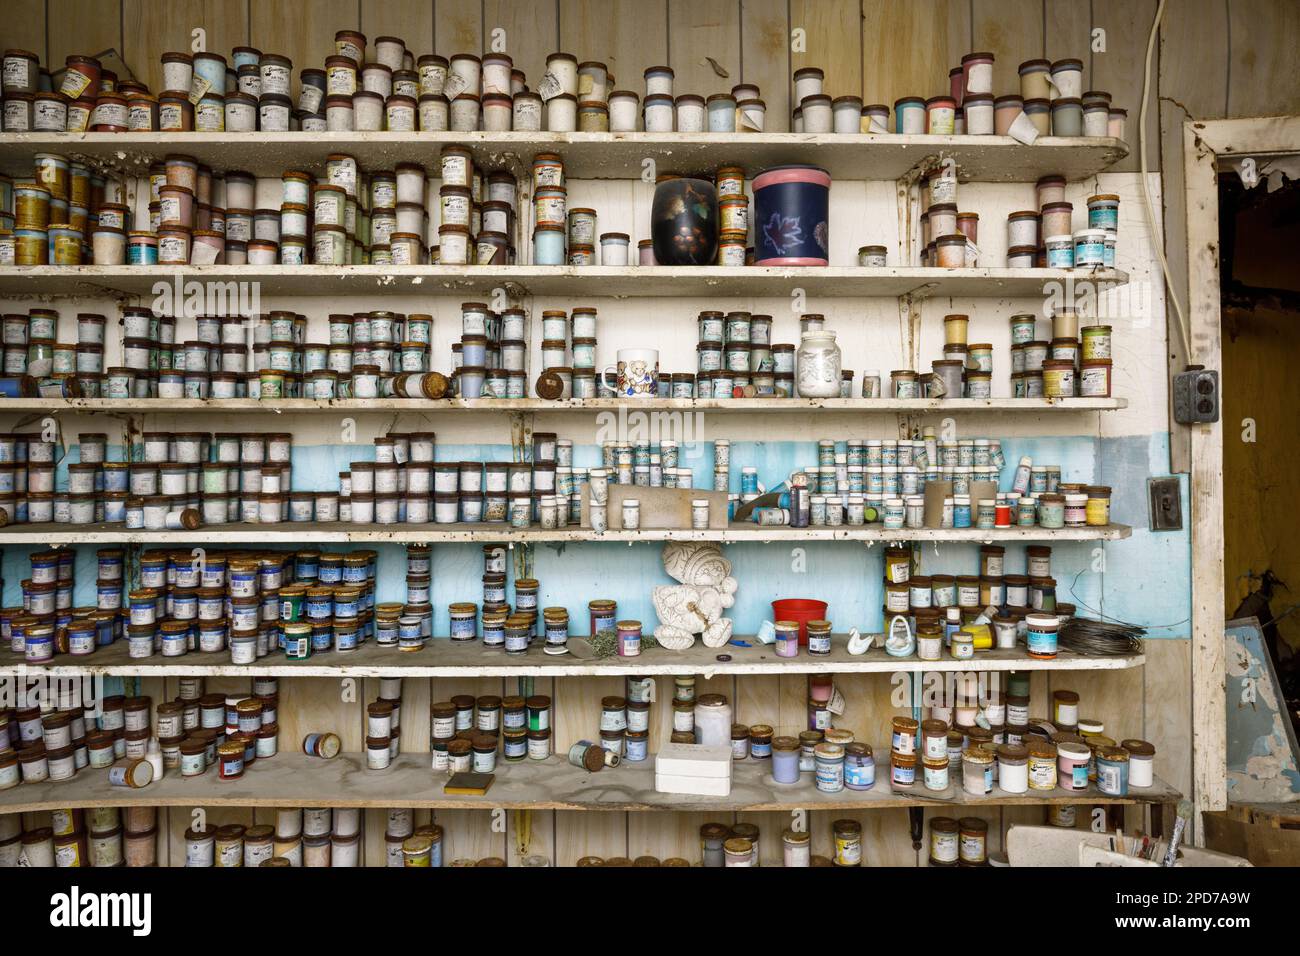 Hundreds of ceramic paint bottles on shelves. Stock Photo